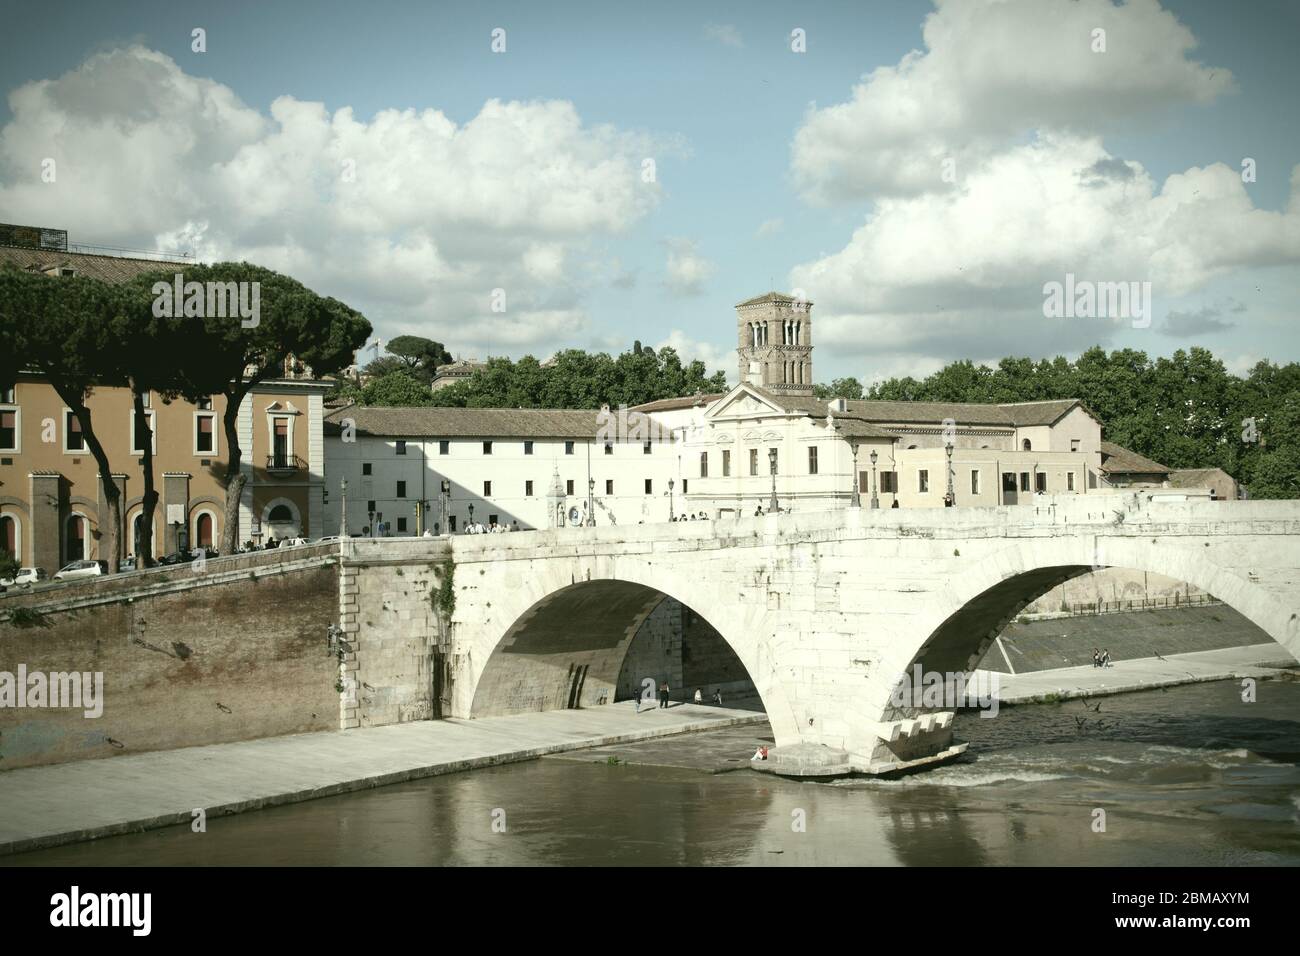 Roma, Italia. Ponte per l'Isola Tiberina, vista della Basilica di San Bartolomeo sull'Isola. Ripa. Colore trattato in modo incrociato ton Foto Stock